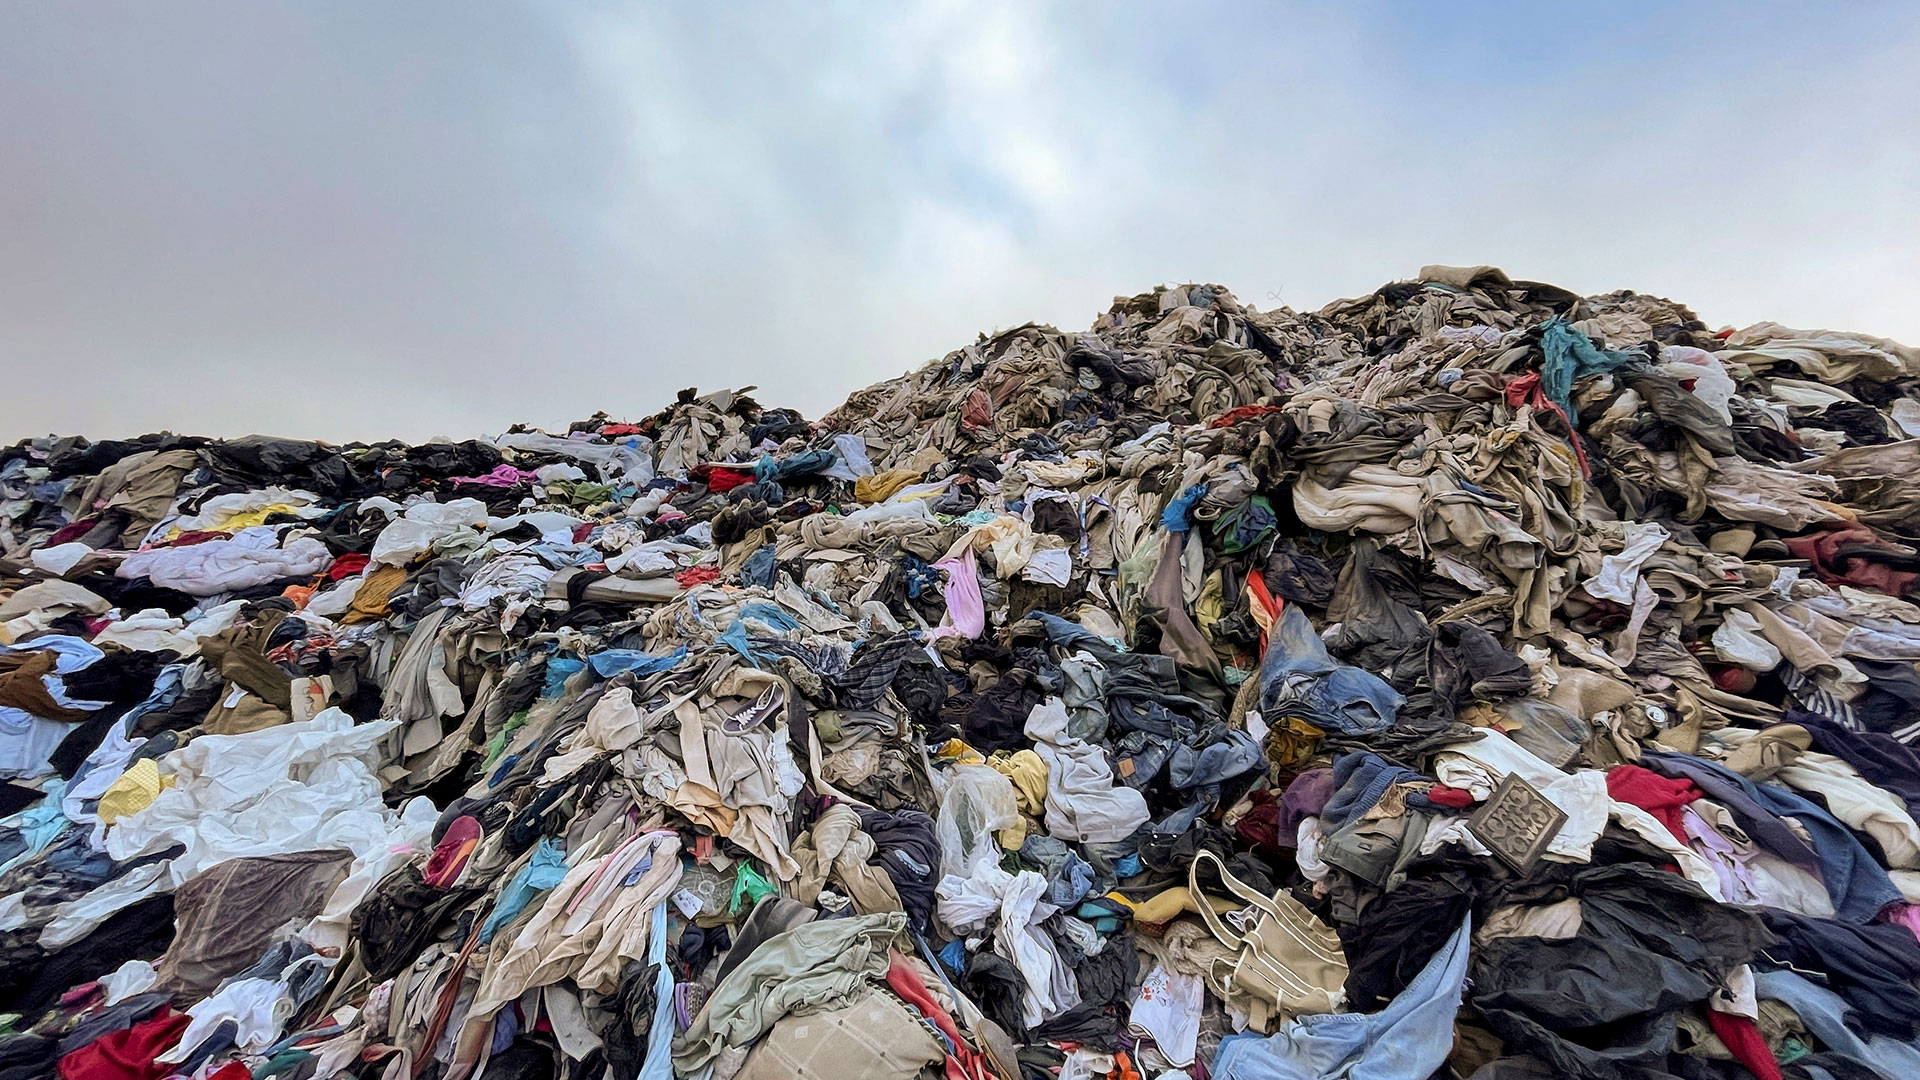 Moda tóxica: impactantes imágenes muestran un colosal “cementerio de ropa”  en el desierto de Atacama - Infobae